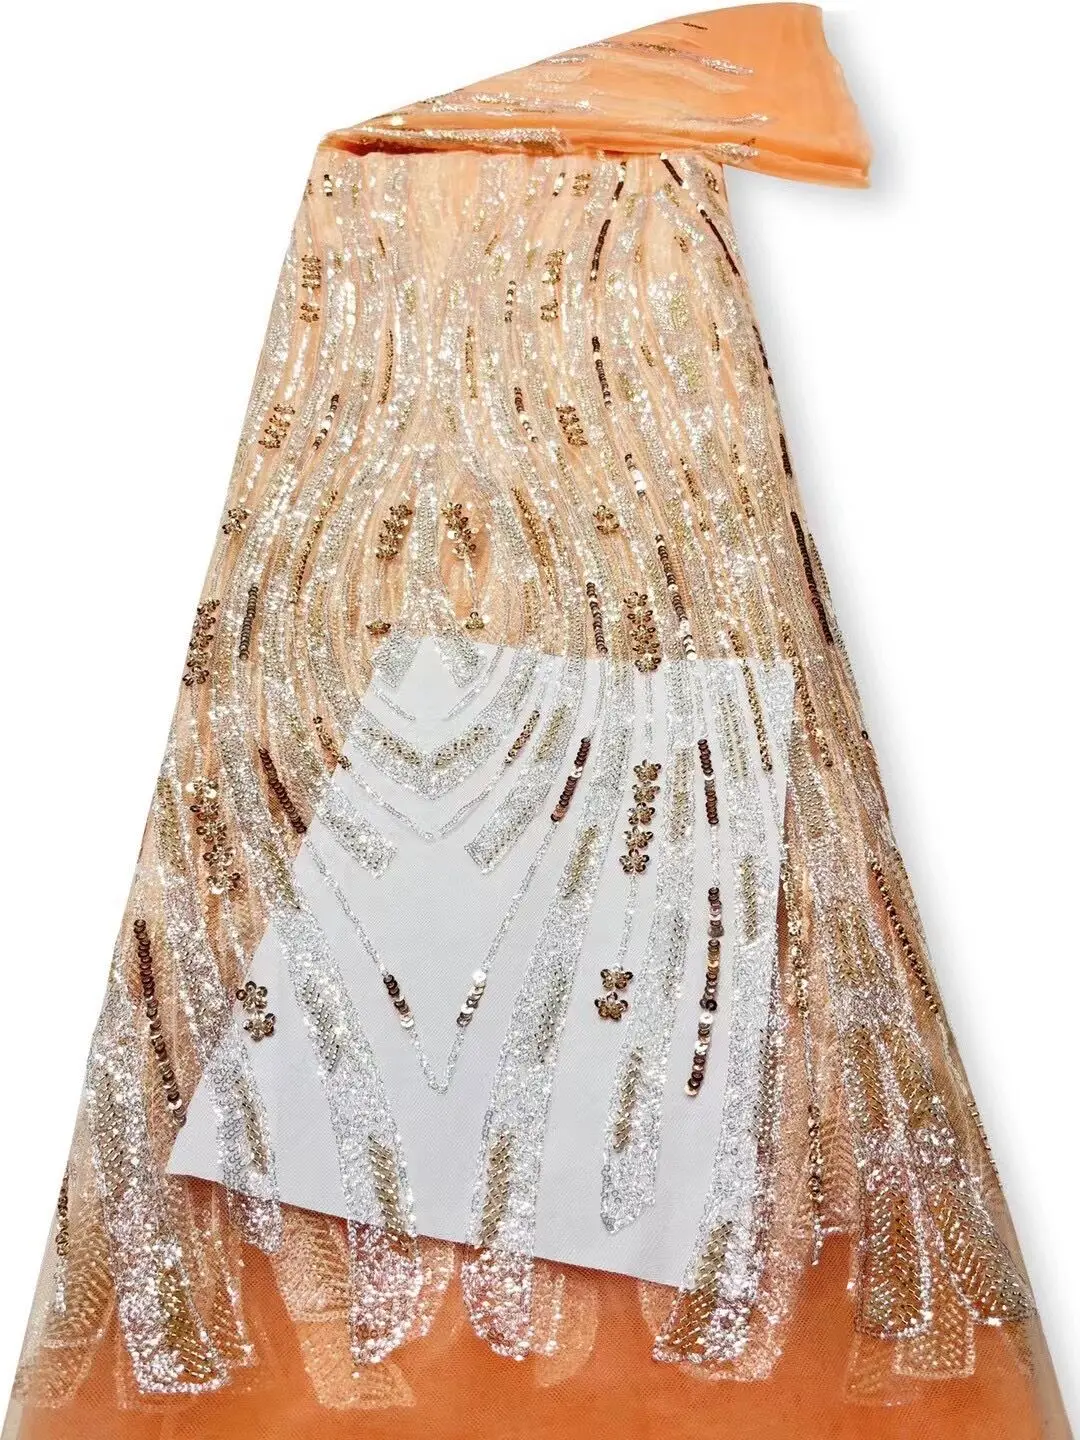  тюль кружевная ткань высокое качество африканская вышивка французский j-1302412 пайетки свадебное платье из бисера 3